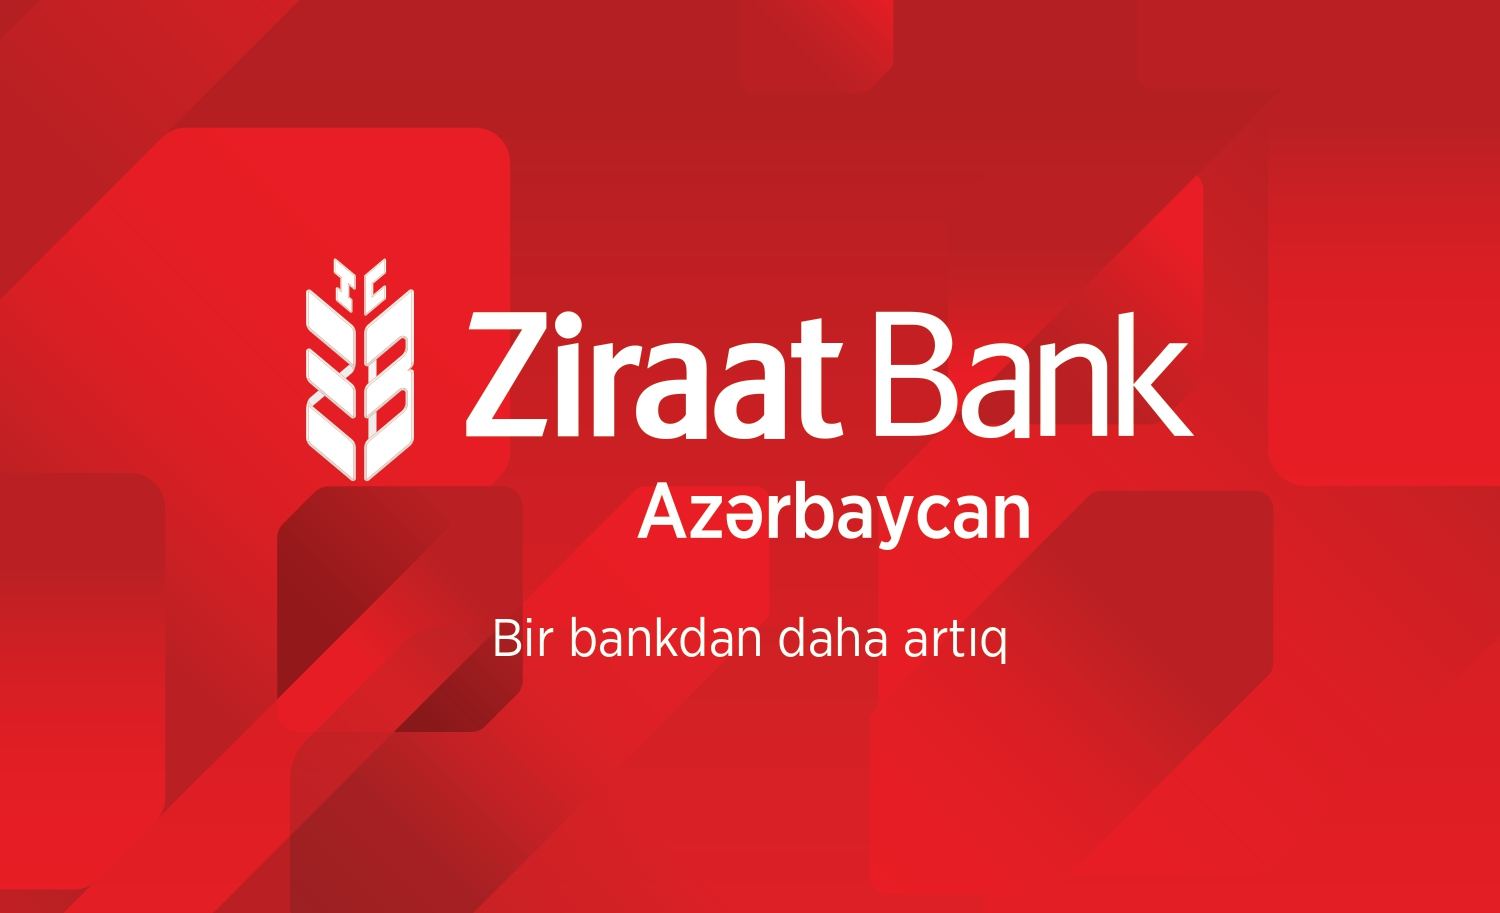 Considerable portion of liabilities of Turkish Ziraat Bank in Azerbaijan accounts for deposits